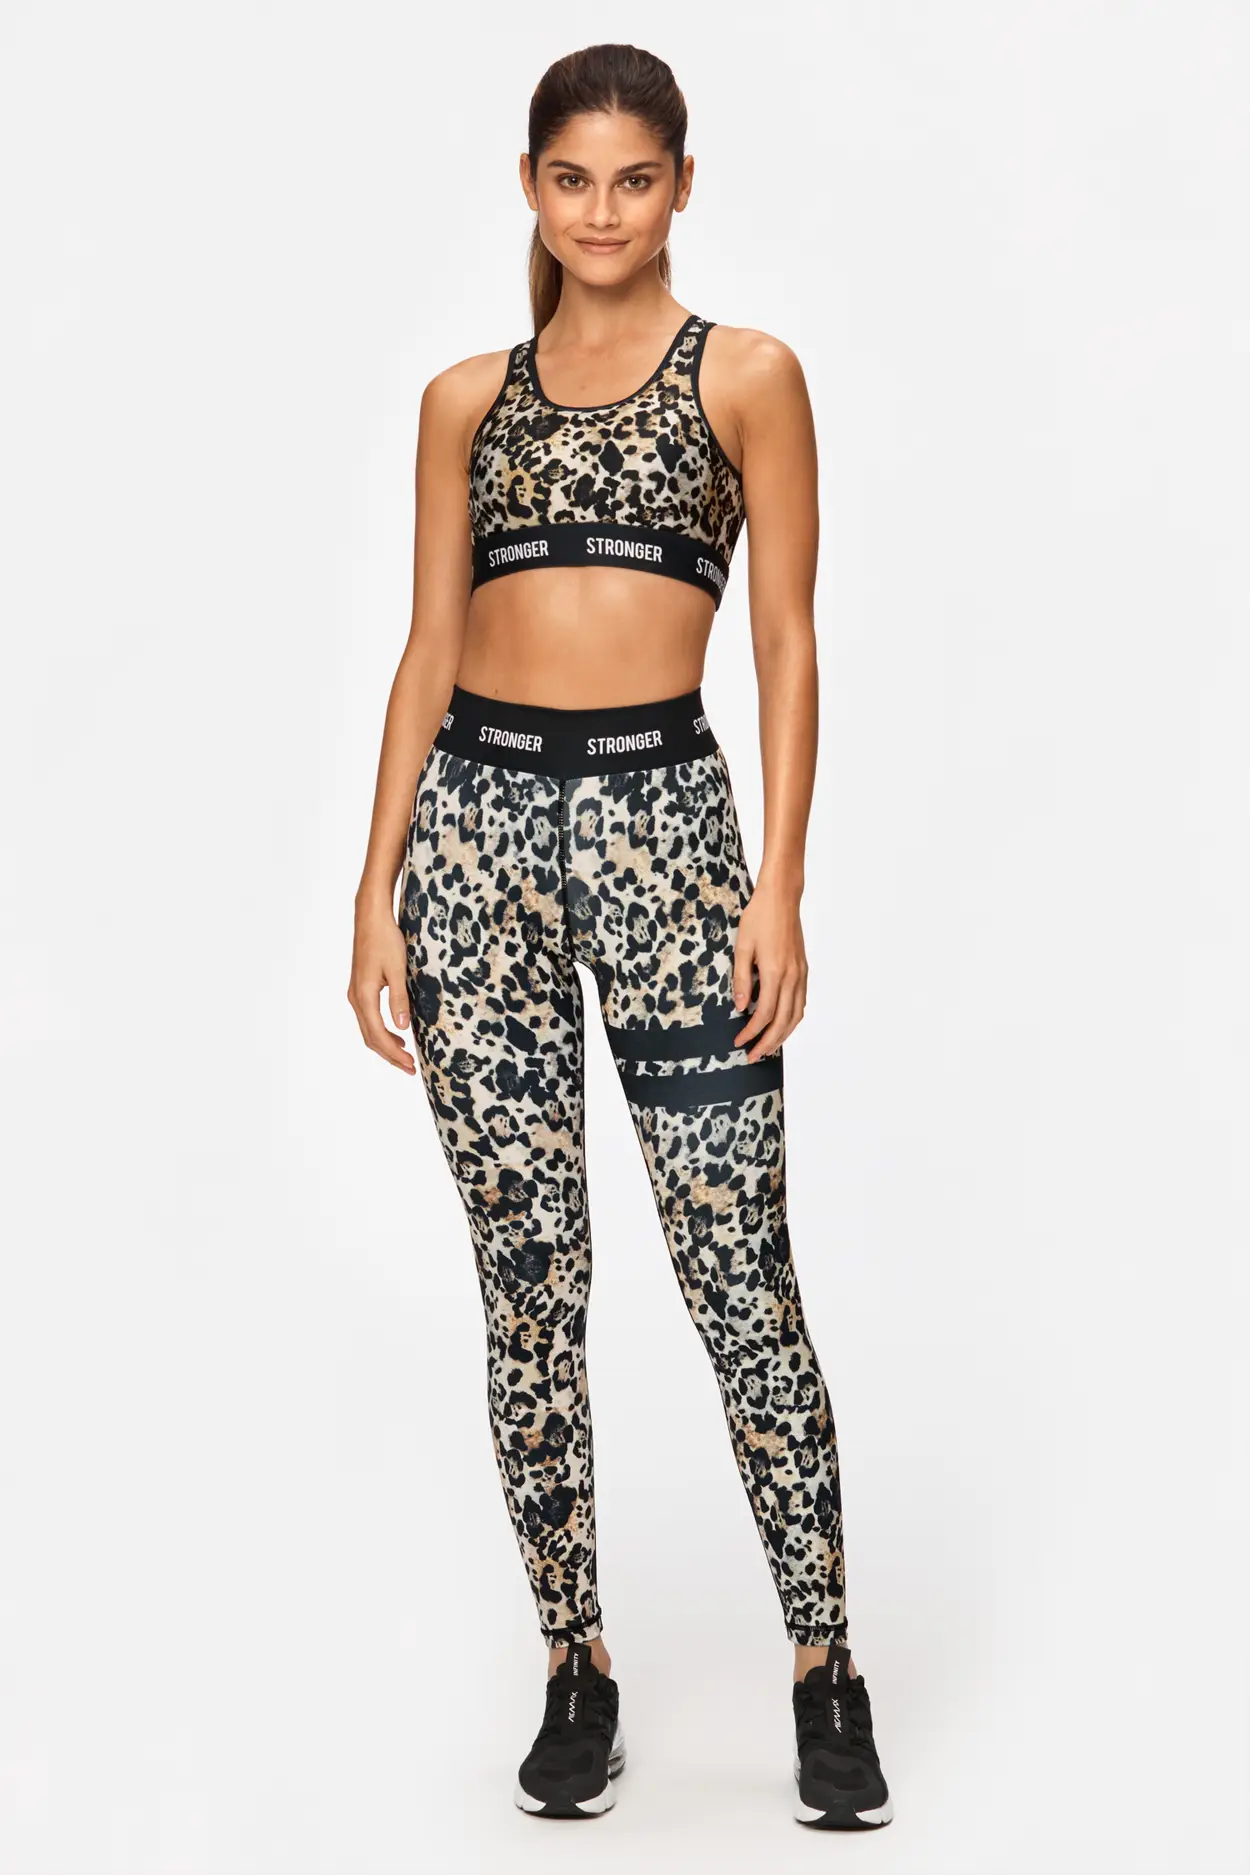 Roar in Style: Trendy Plus Size Leopard Print Leggings - Buy Now! – Jewelry  Bubble